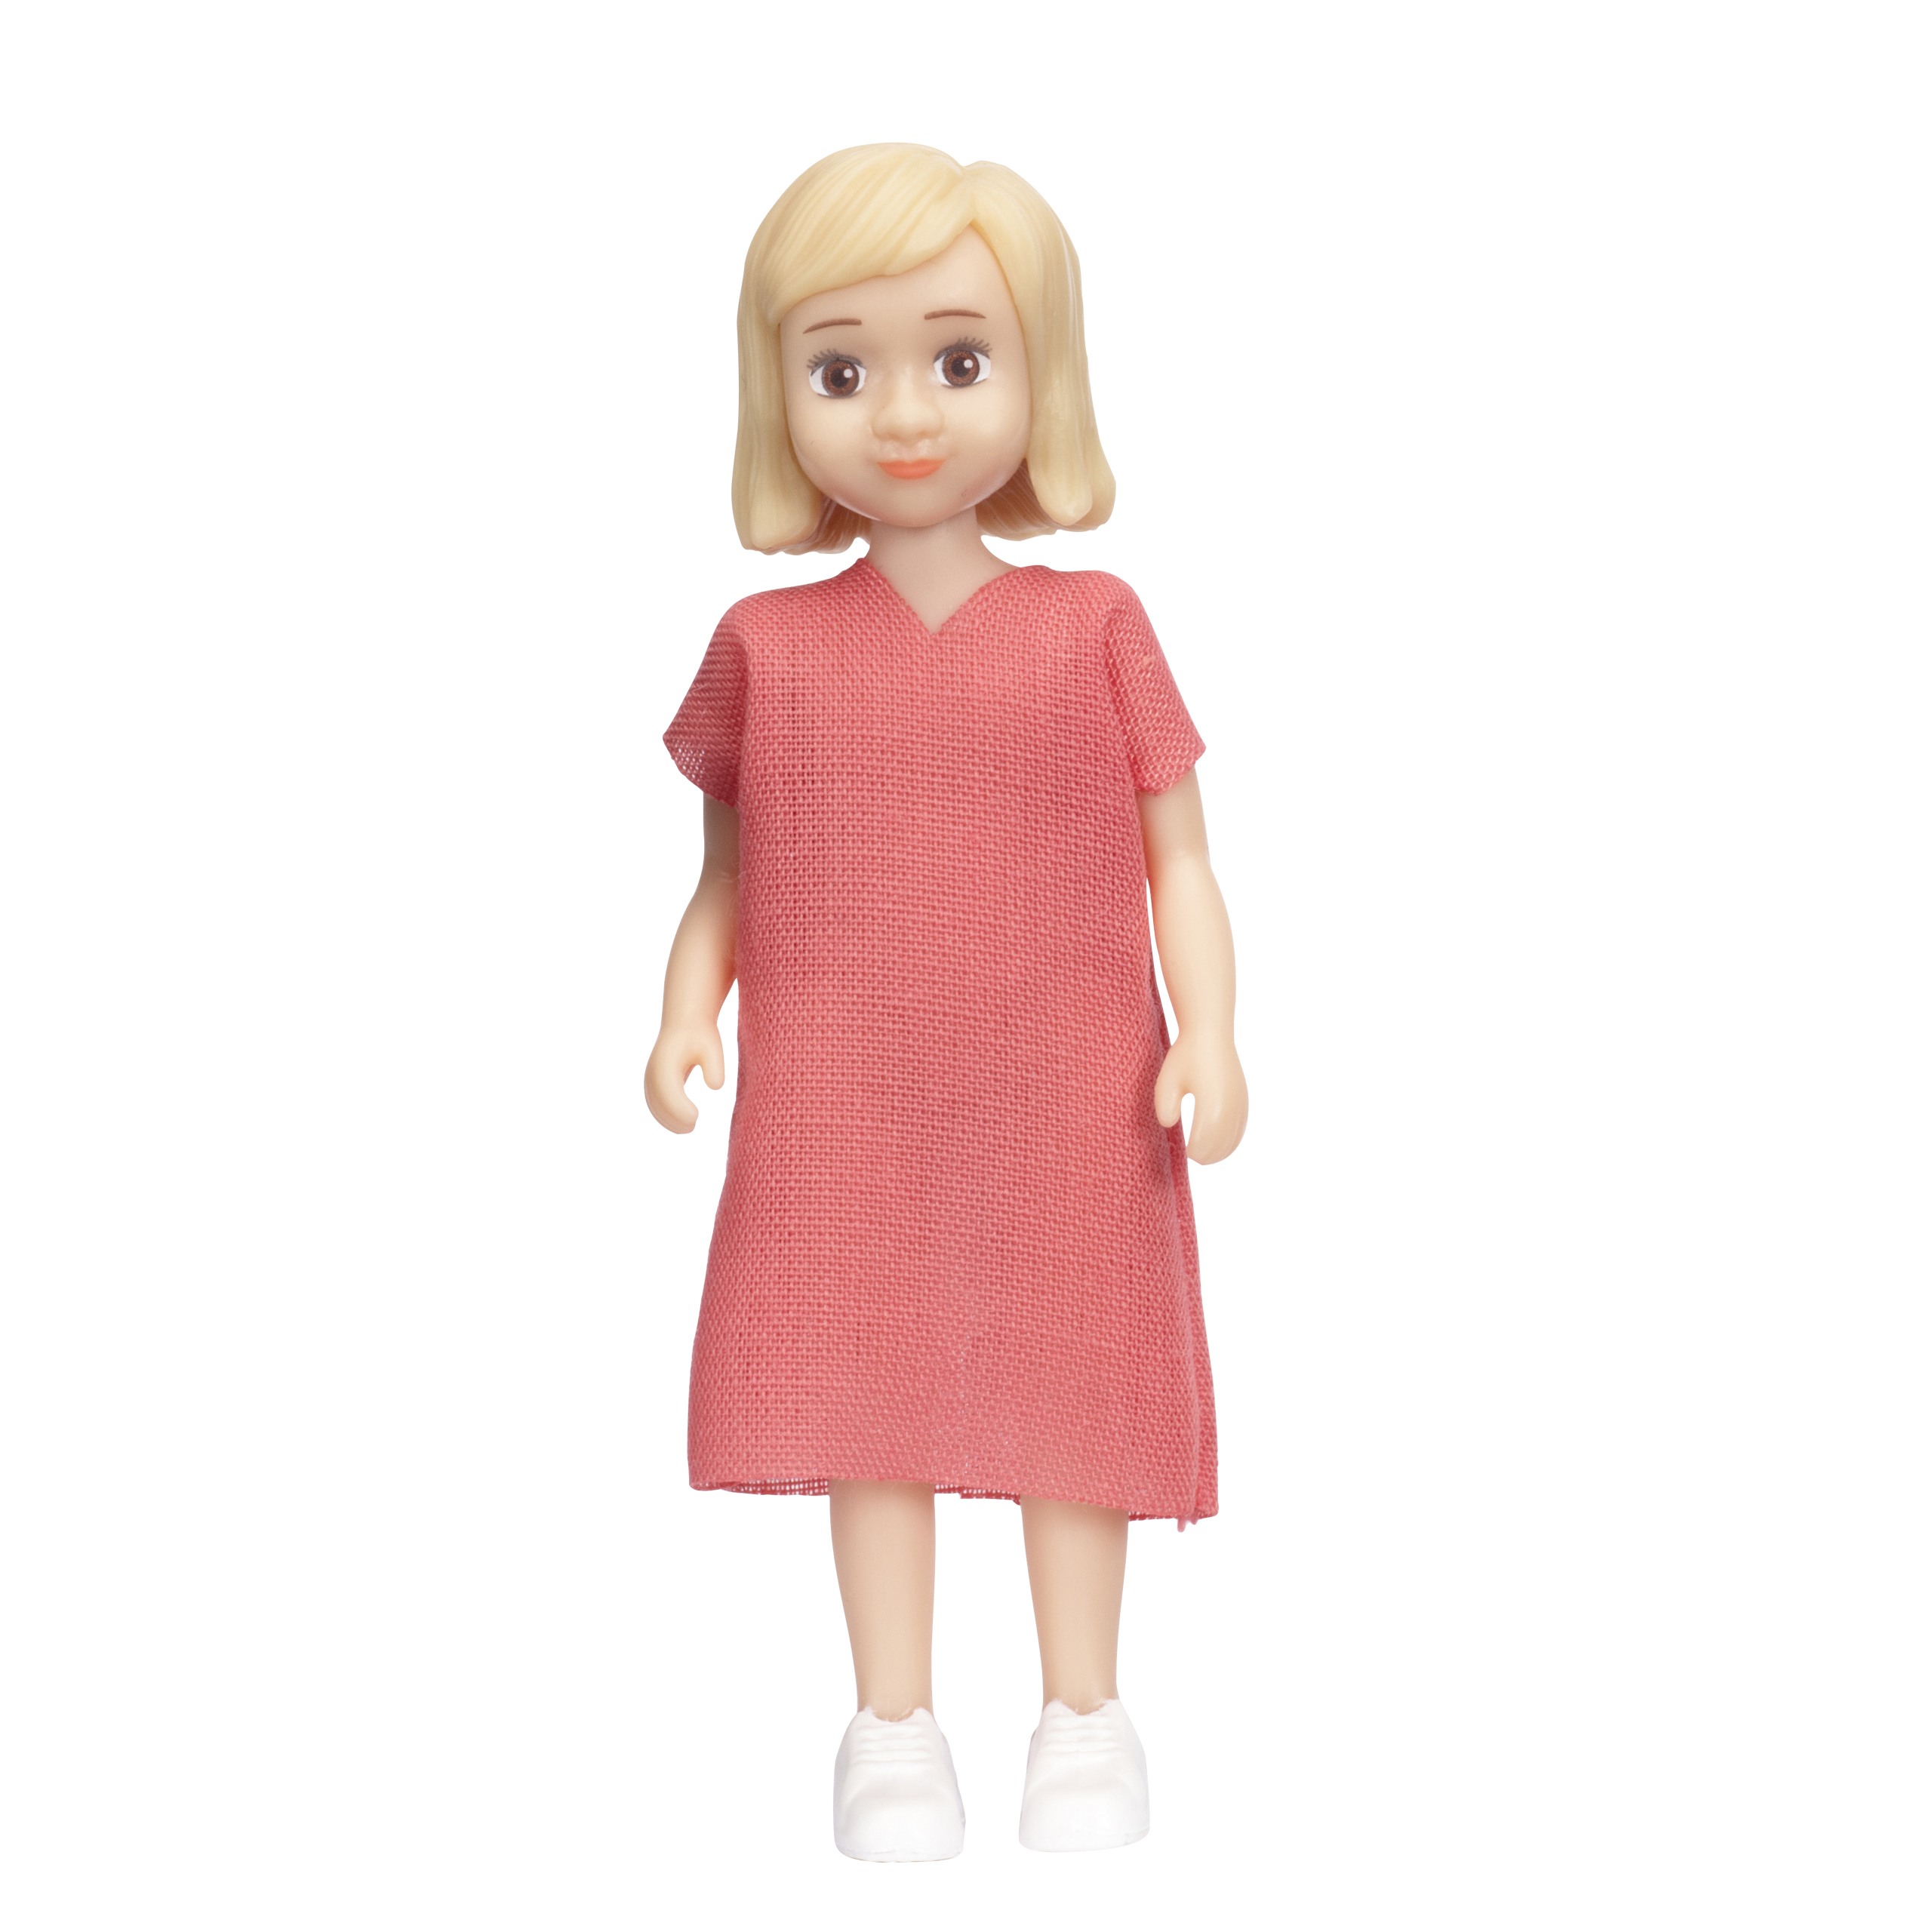 Dolls lundby dollhouse doll charlie girl